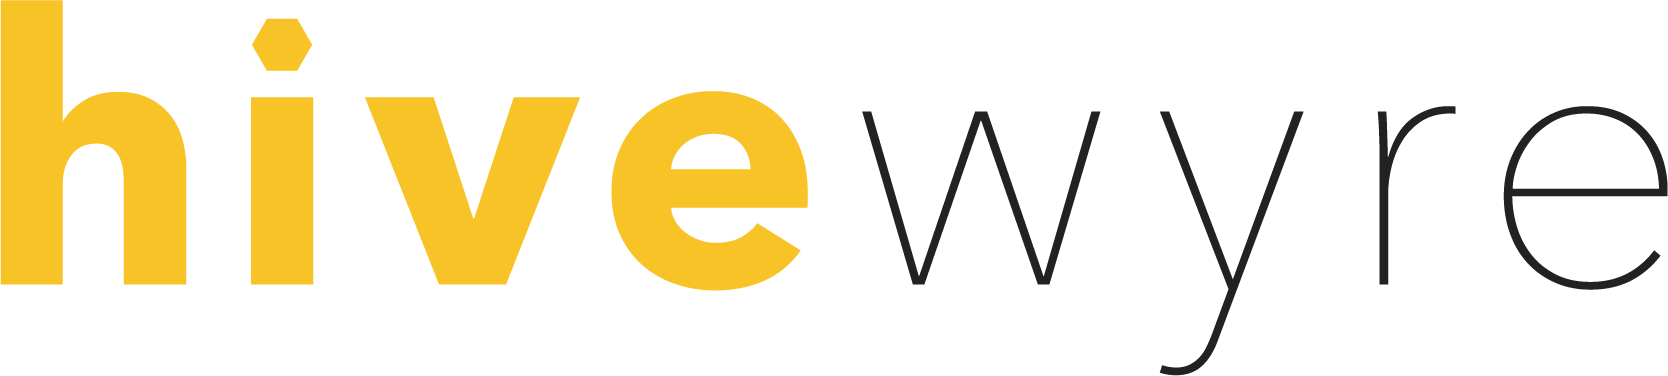 Hivewyre logo.